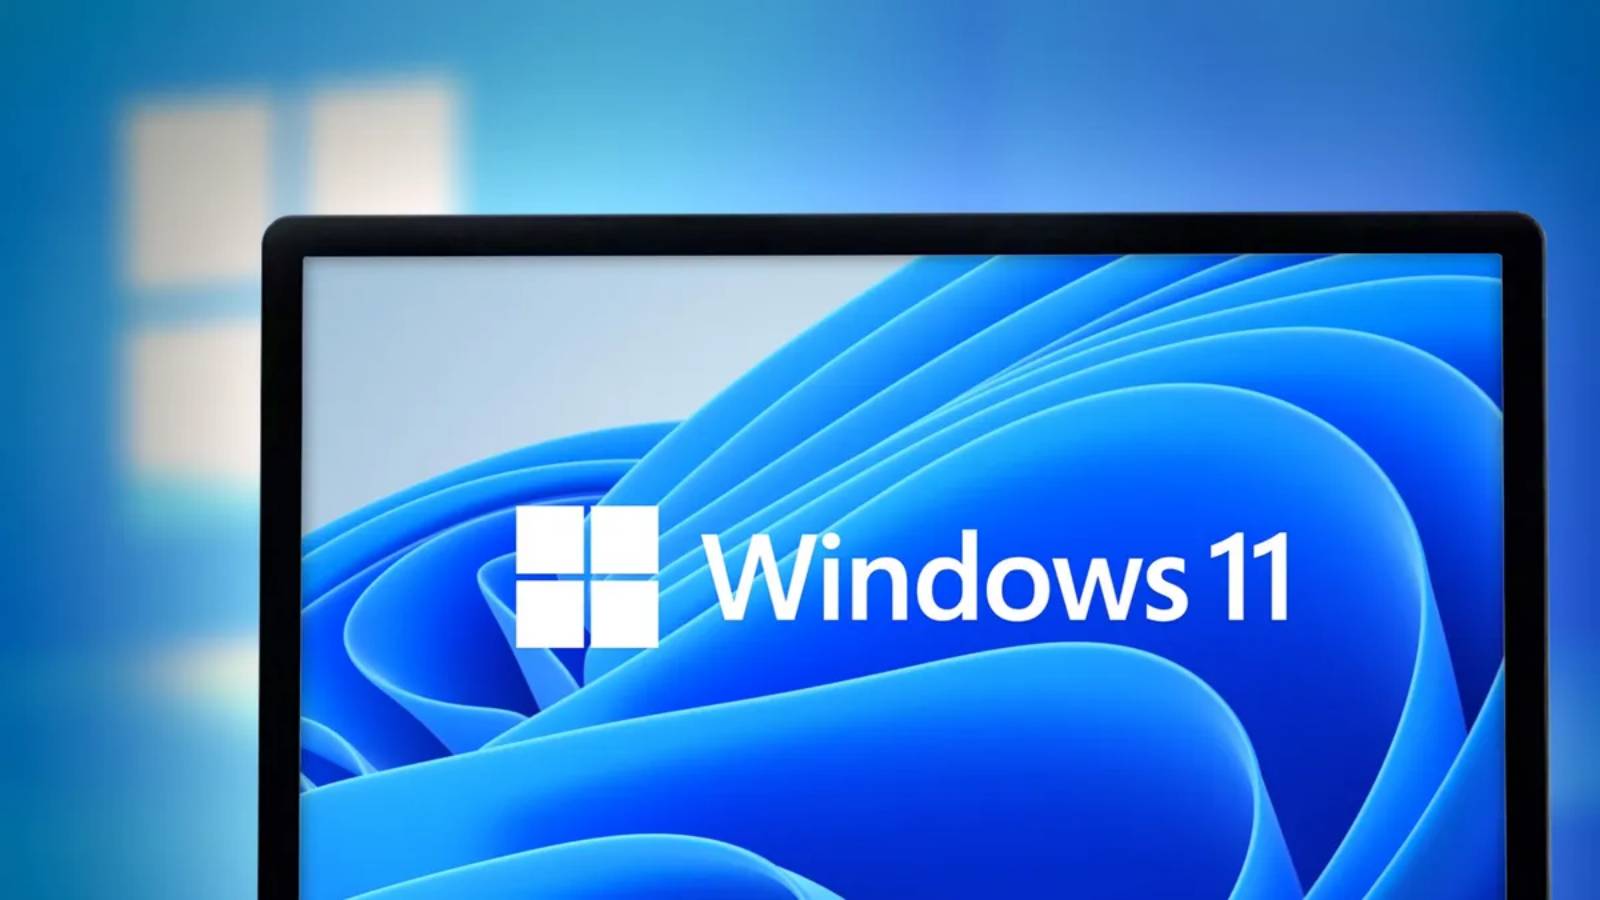 Microsoft amplía LIMITACIONES Windows 11 decidió bloquear más